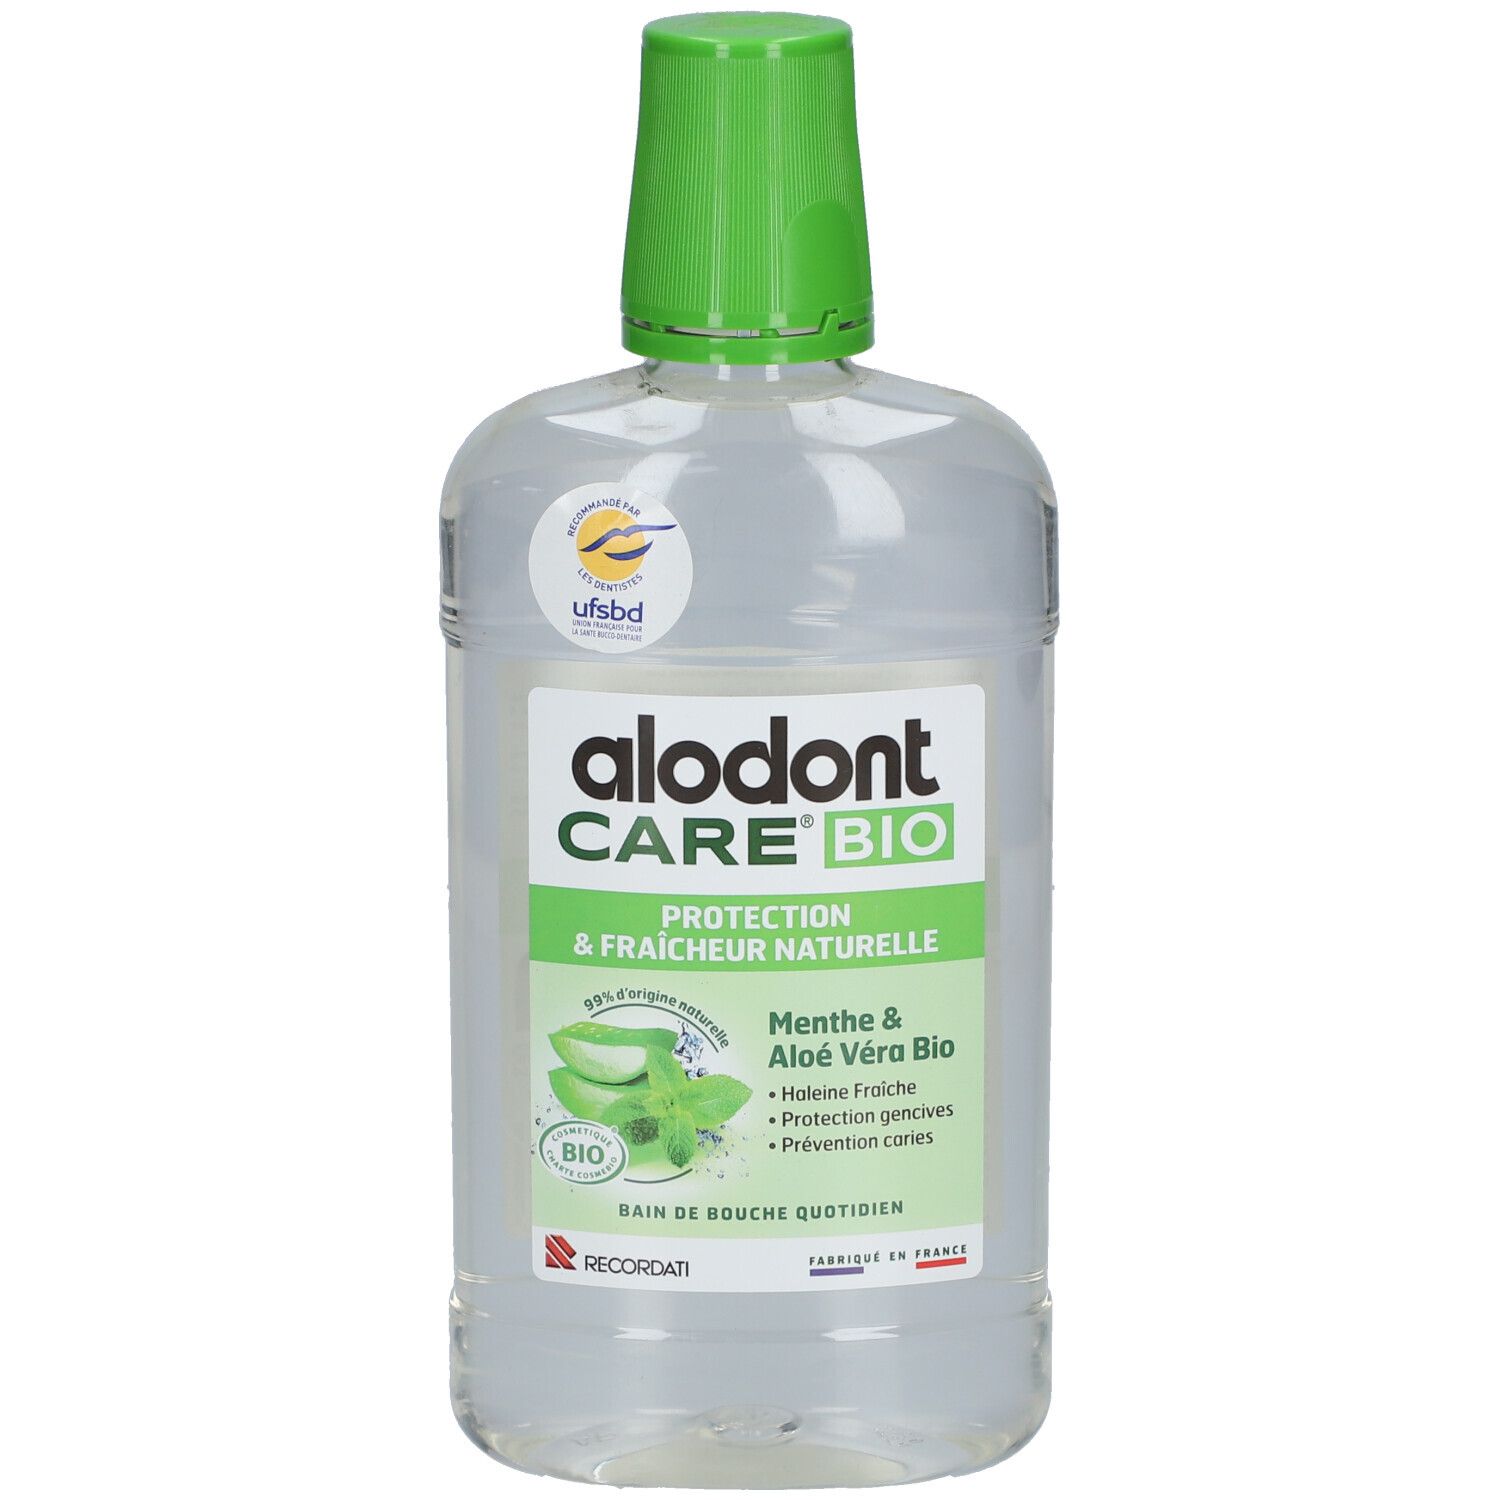 alodont Care® BIO Protection & Fraîcheur naturelle Bain de Bouche Quotidien